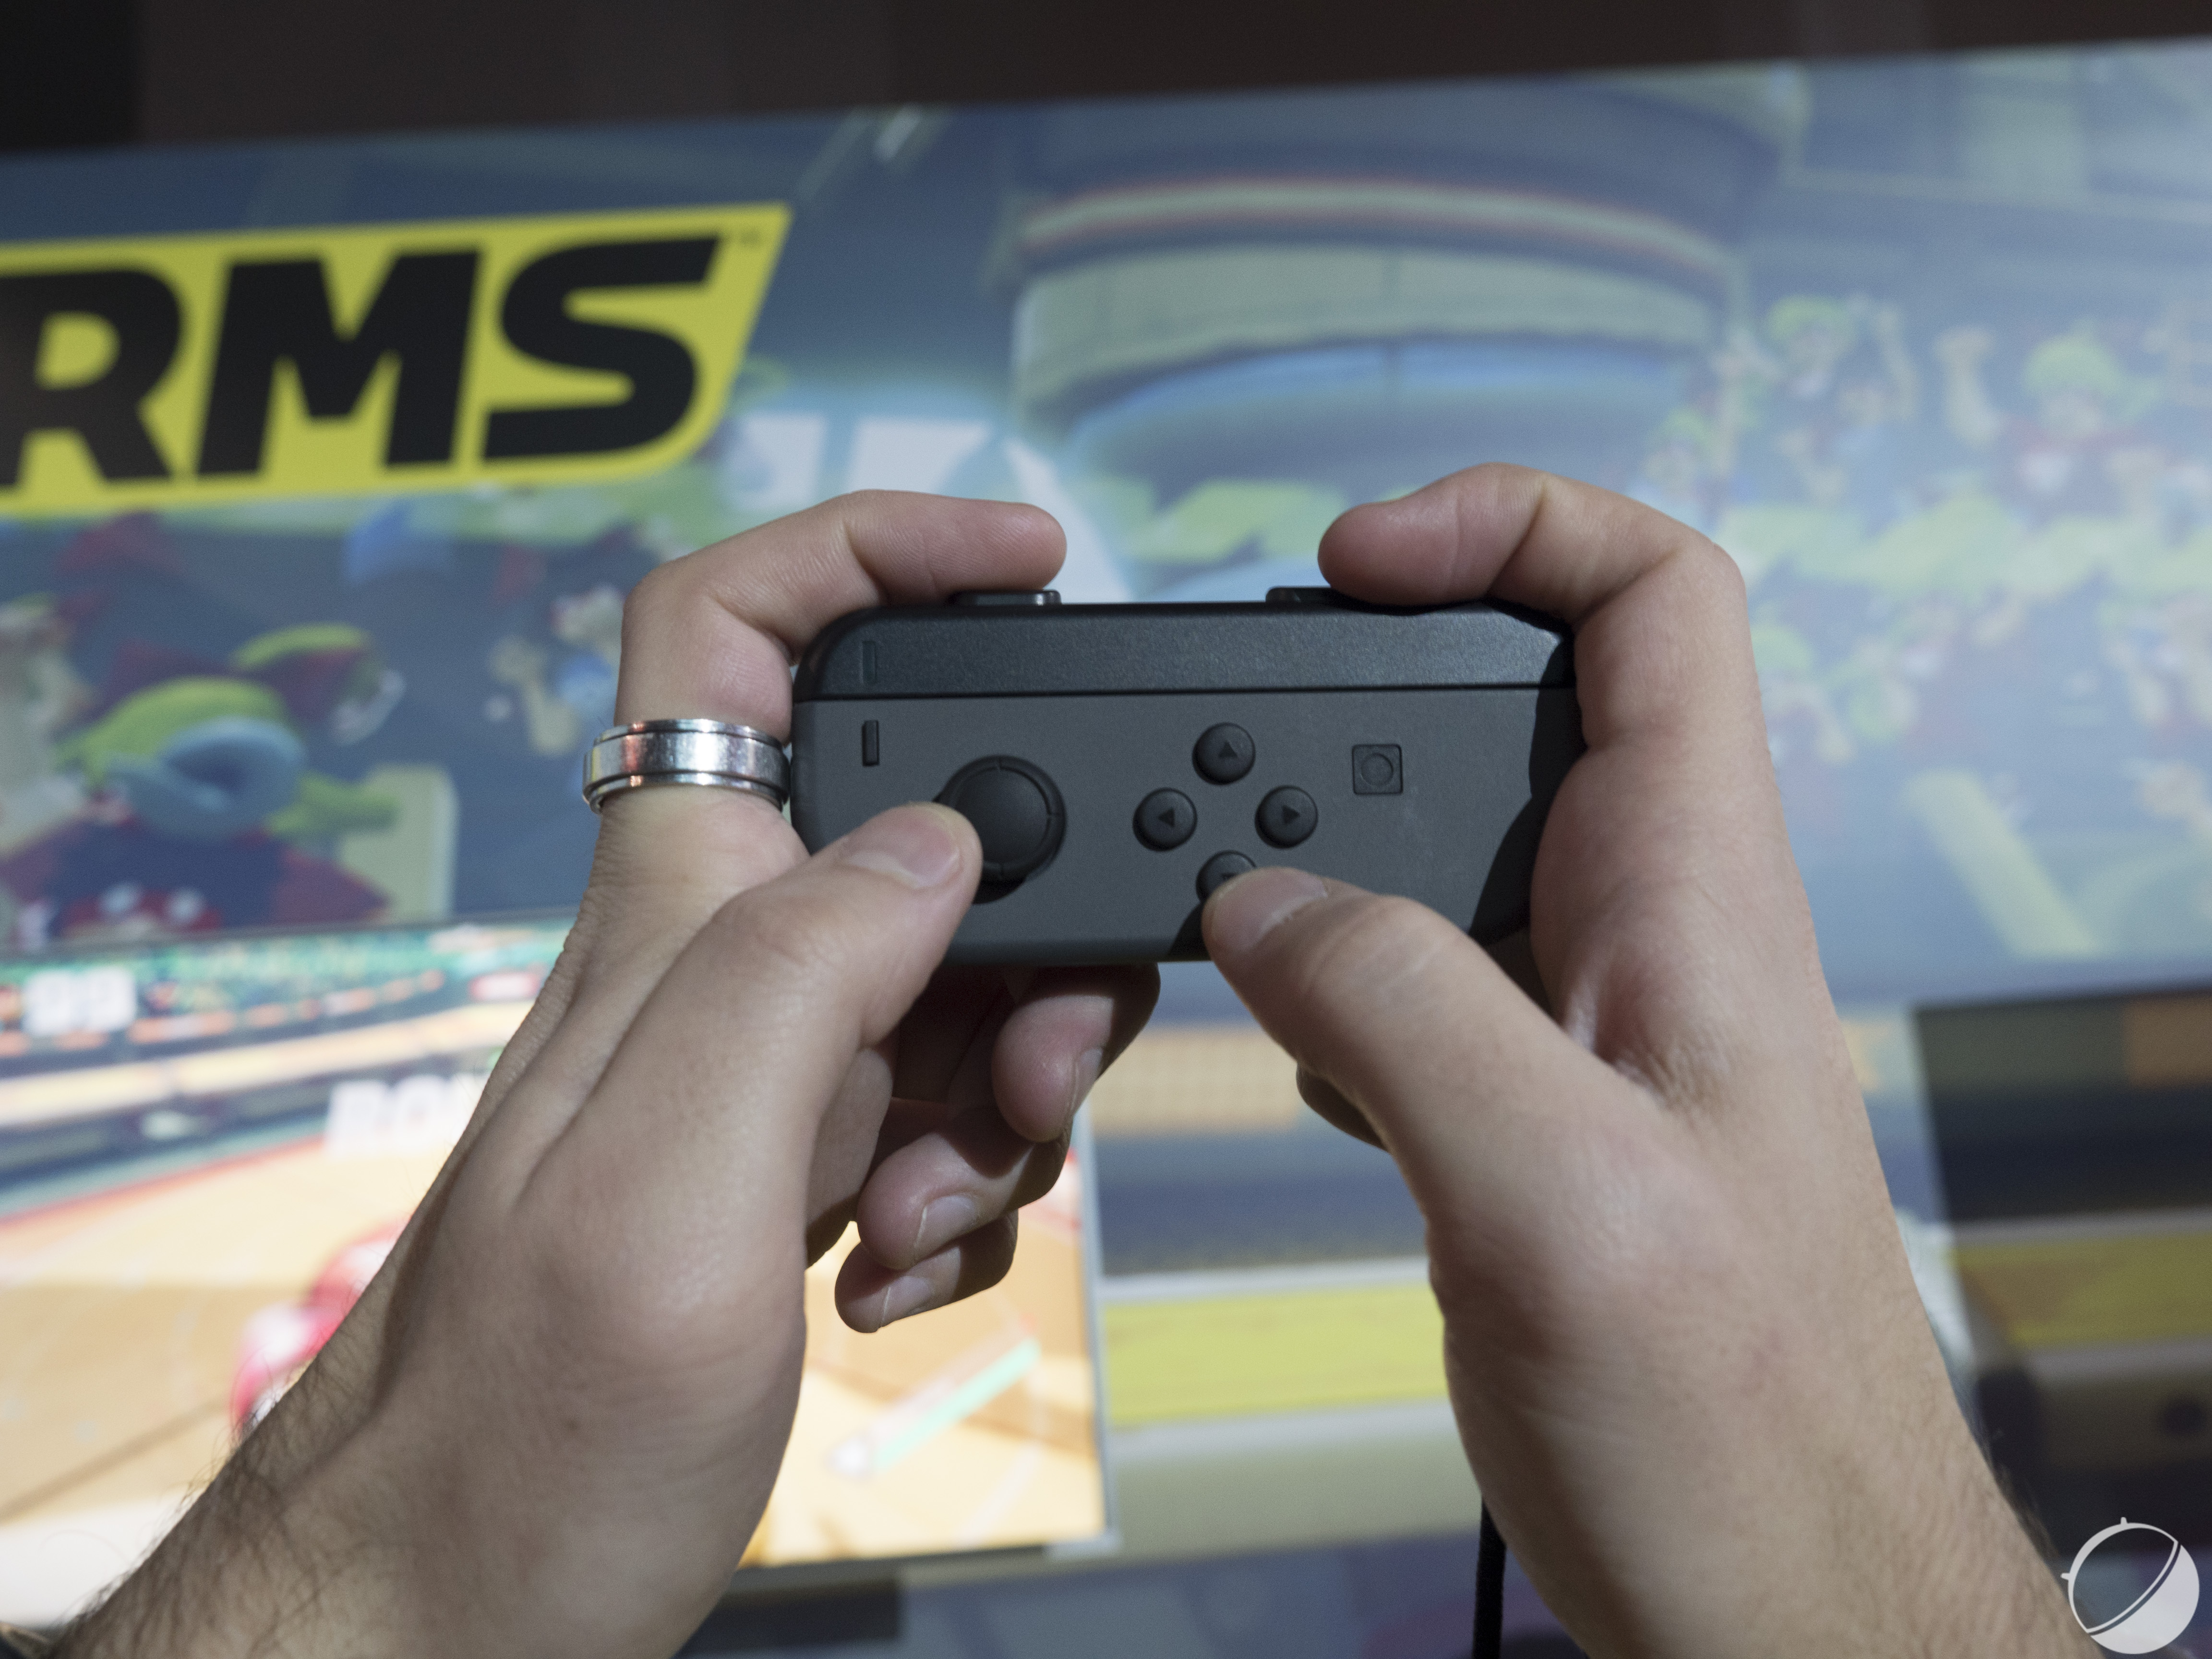 Preview Nintendo Switch Sports : La relève de Wii Sports semble